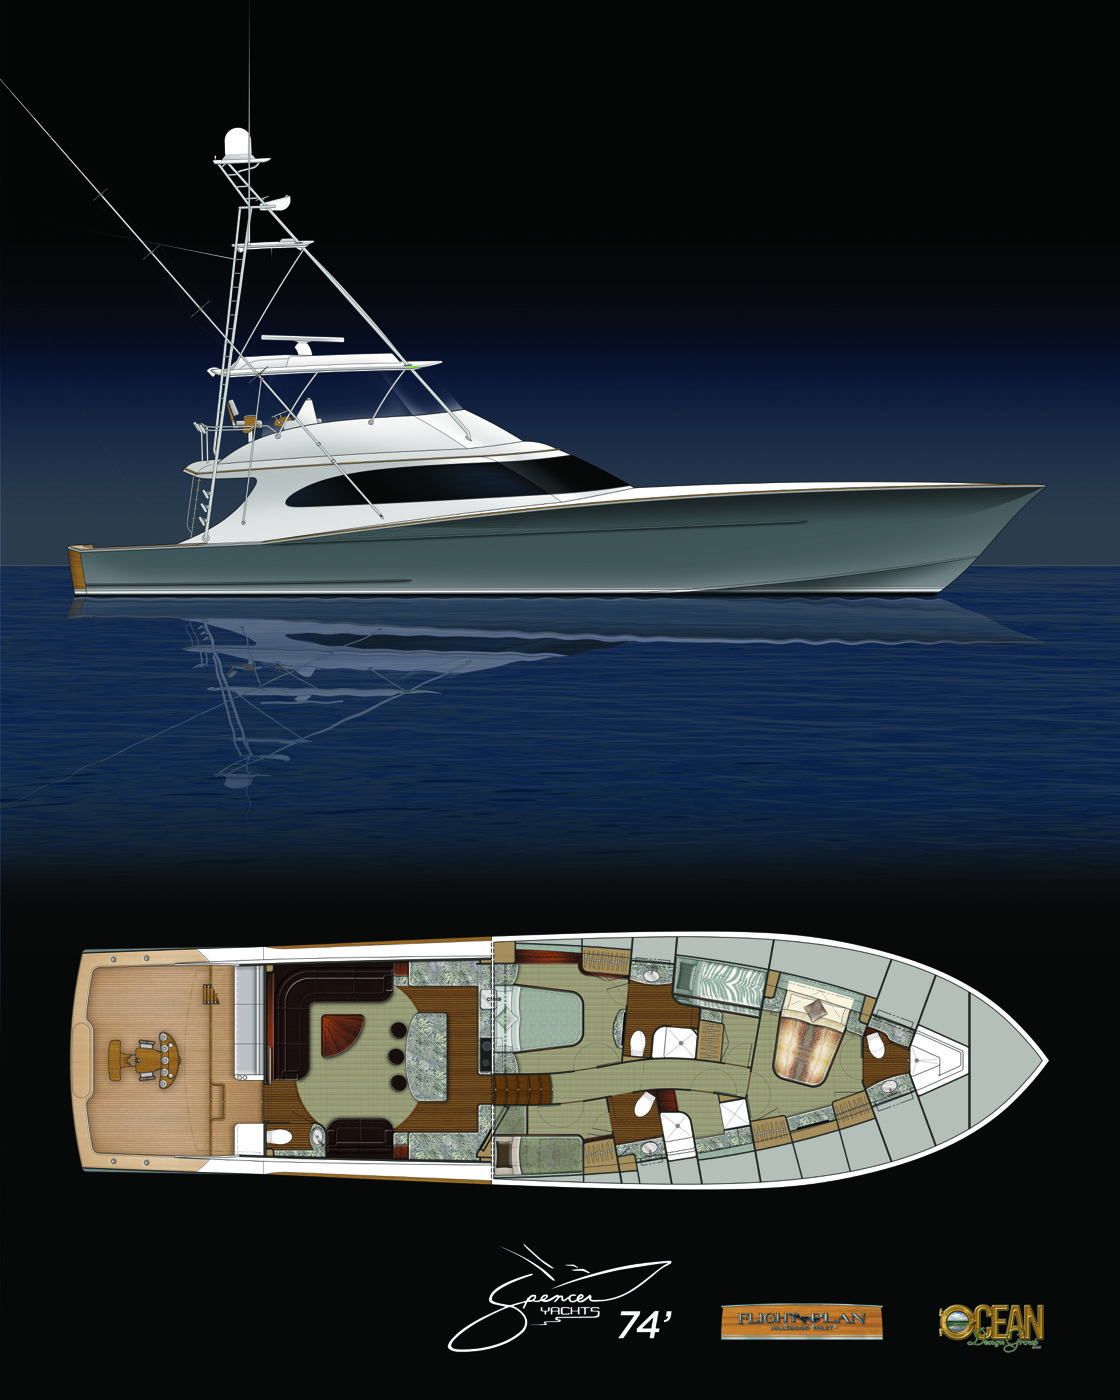 ocean yacht design